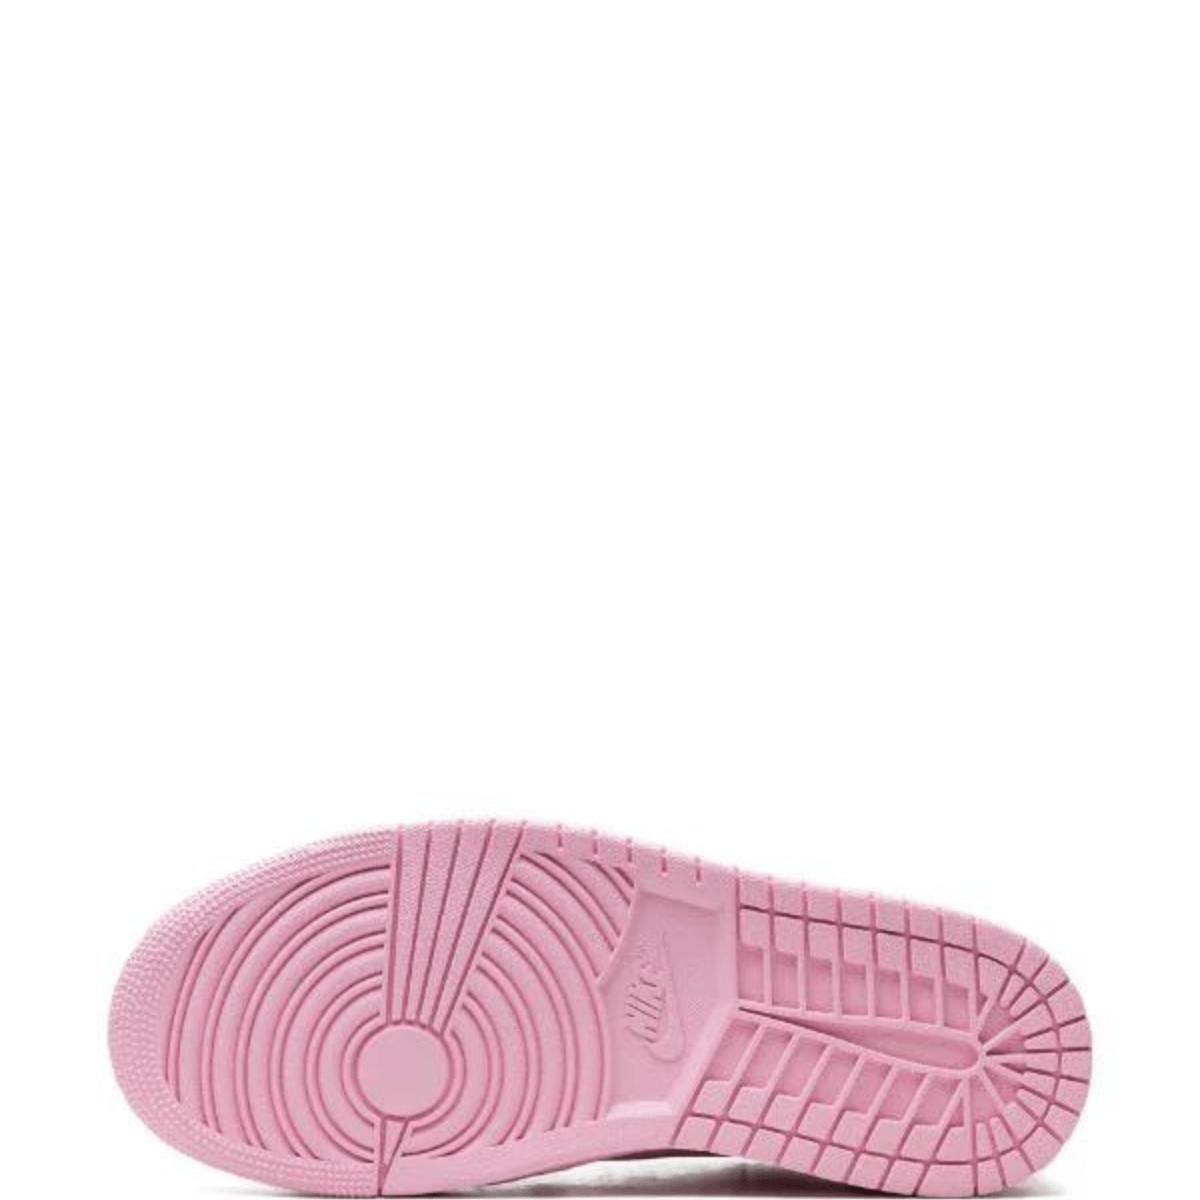 Air Jordan 1 Low Method of Make “Perfect Pink” Sneakers Air Jordan